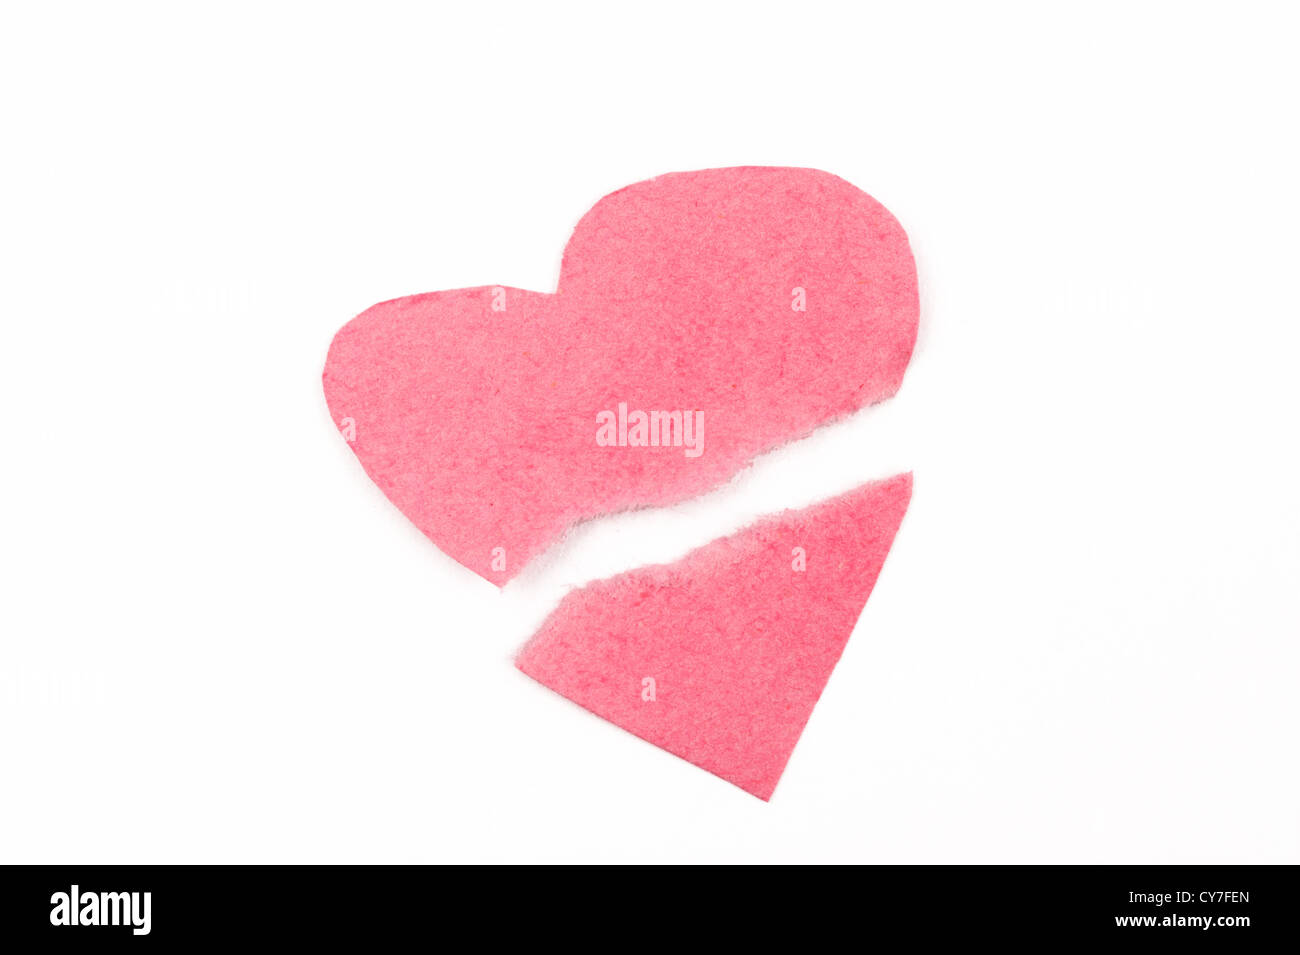 Forma de corazón roto hechas de papel rosado Foto de stock